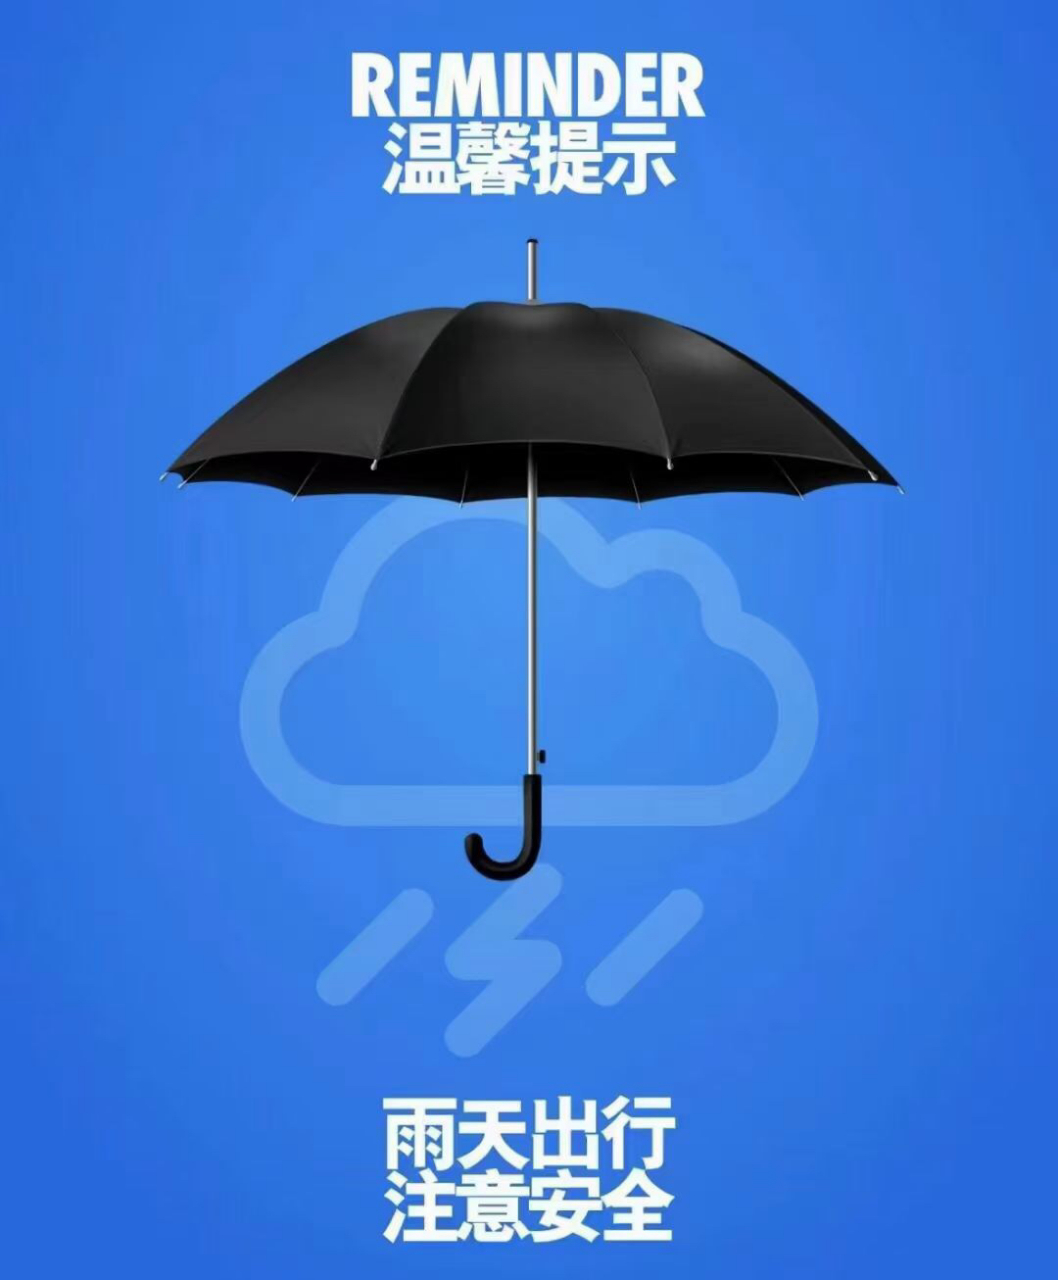 雨伞放置区温馨提示语图片